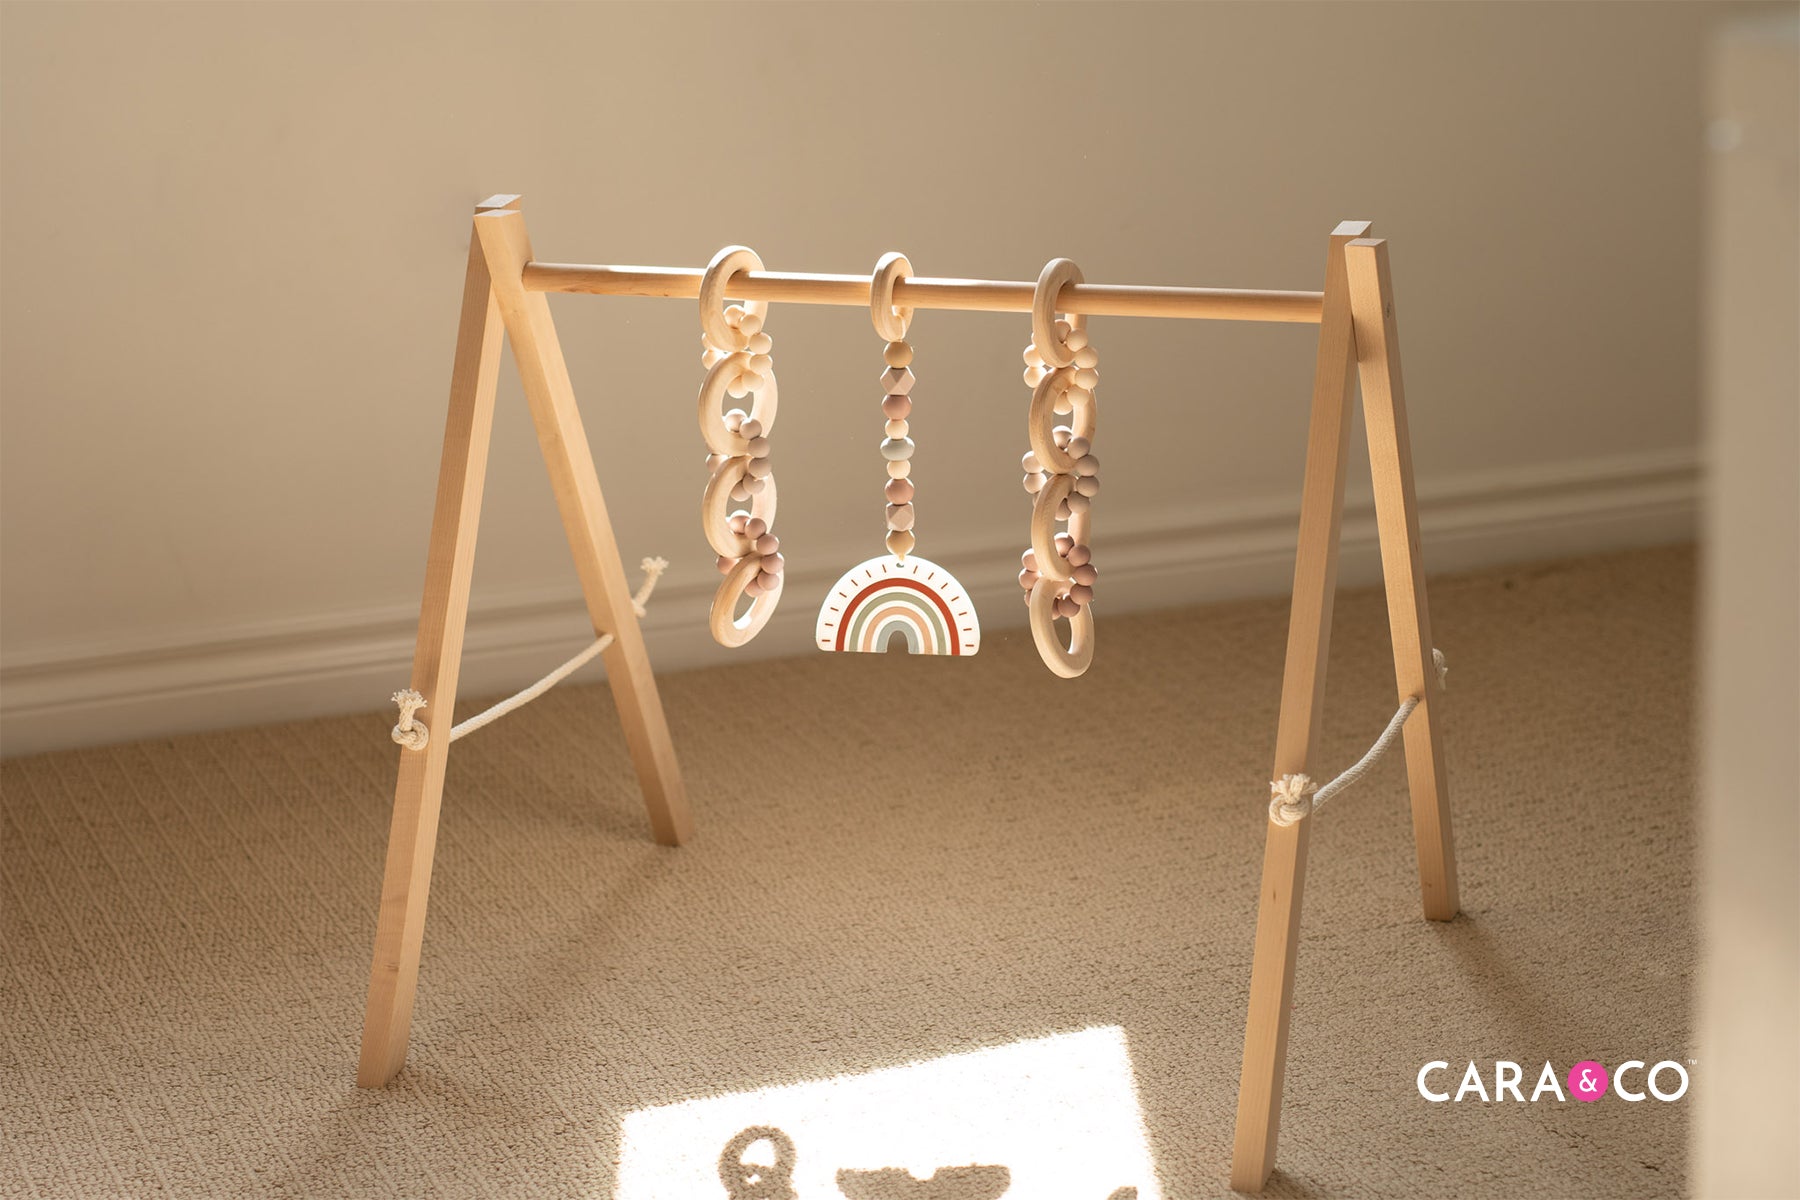 DIY Wooden Play Gym Toys - Cara & Co